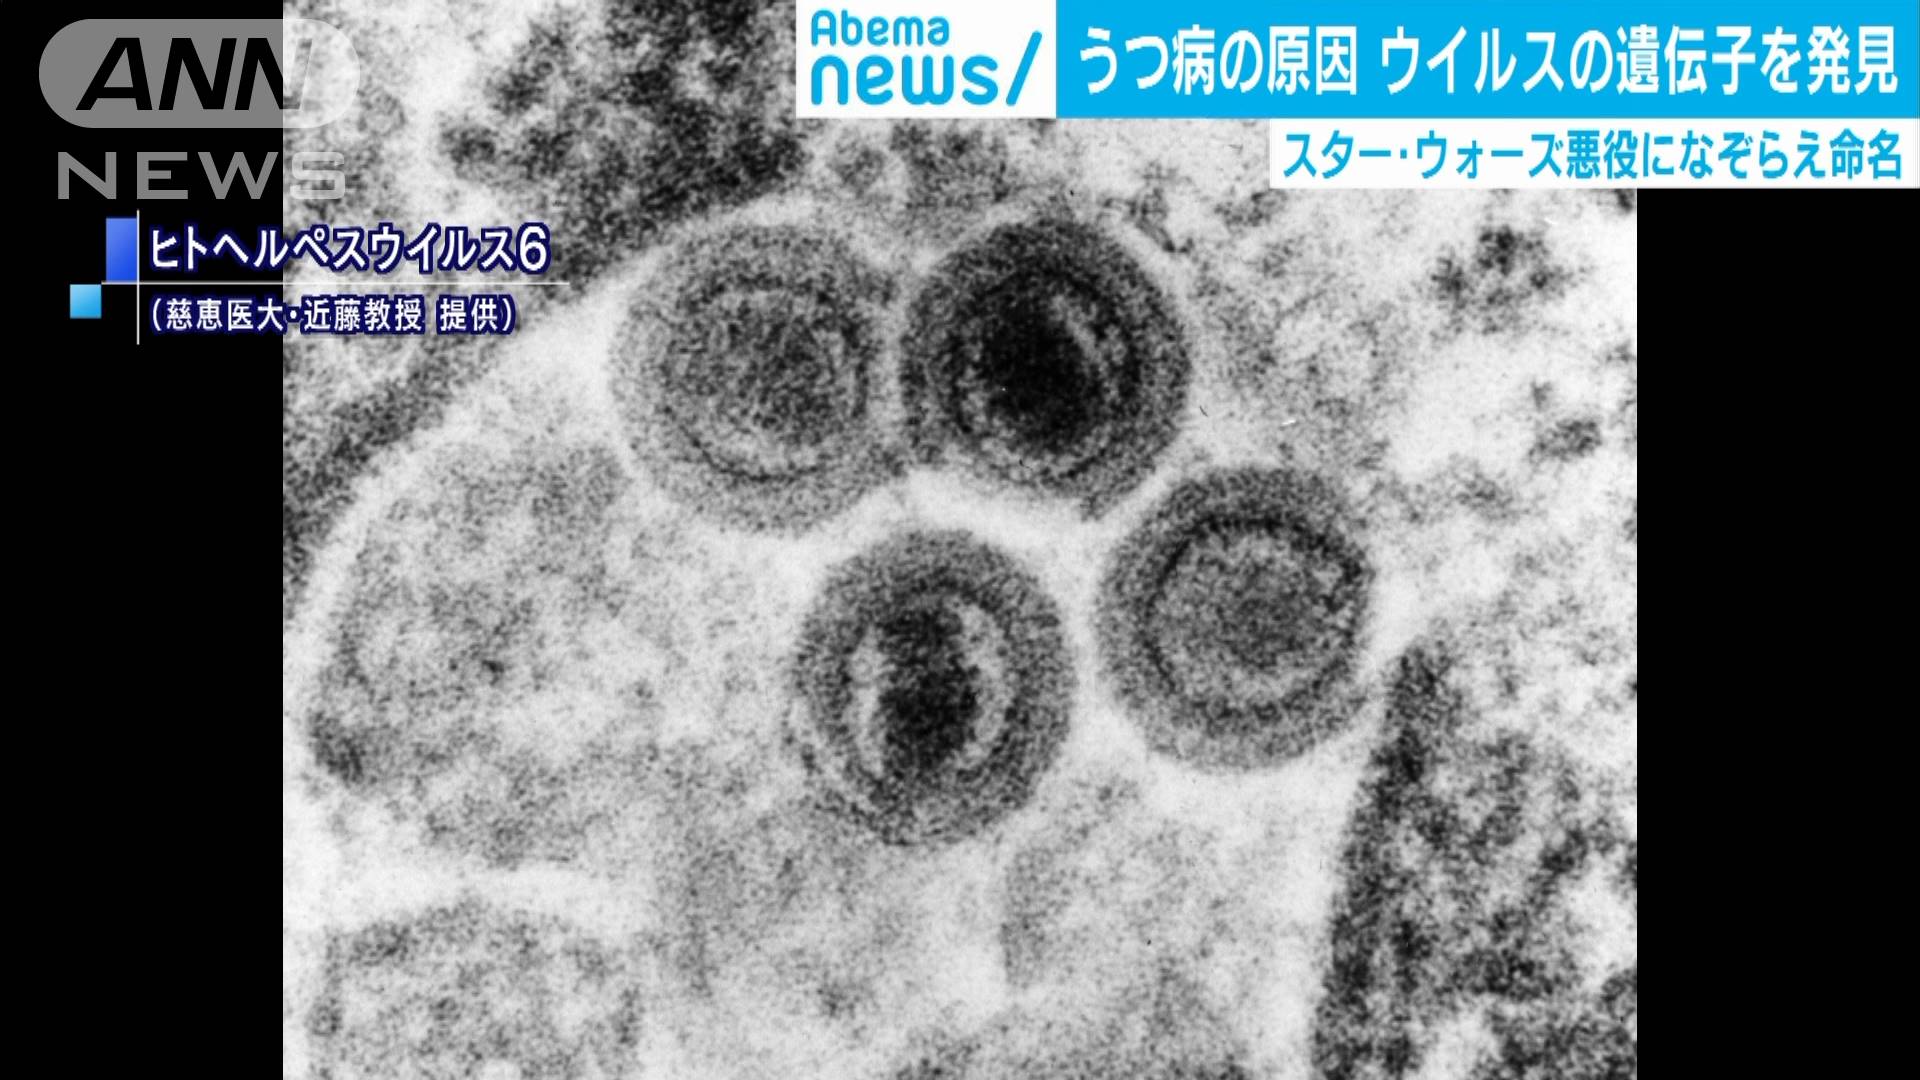 うつ病の原因 となるウイルスの遺伝子を発見 テレ朝news テレビ朝日のニュースサイト